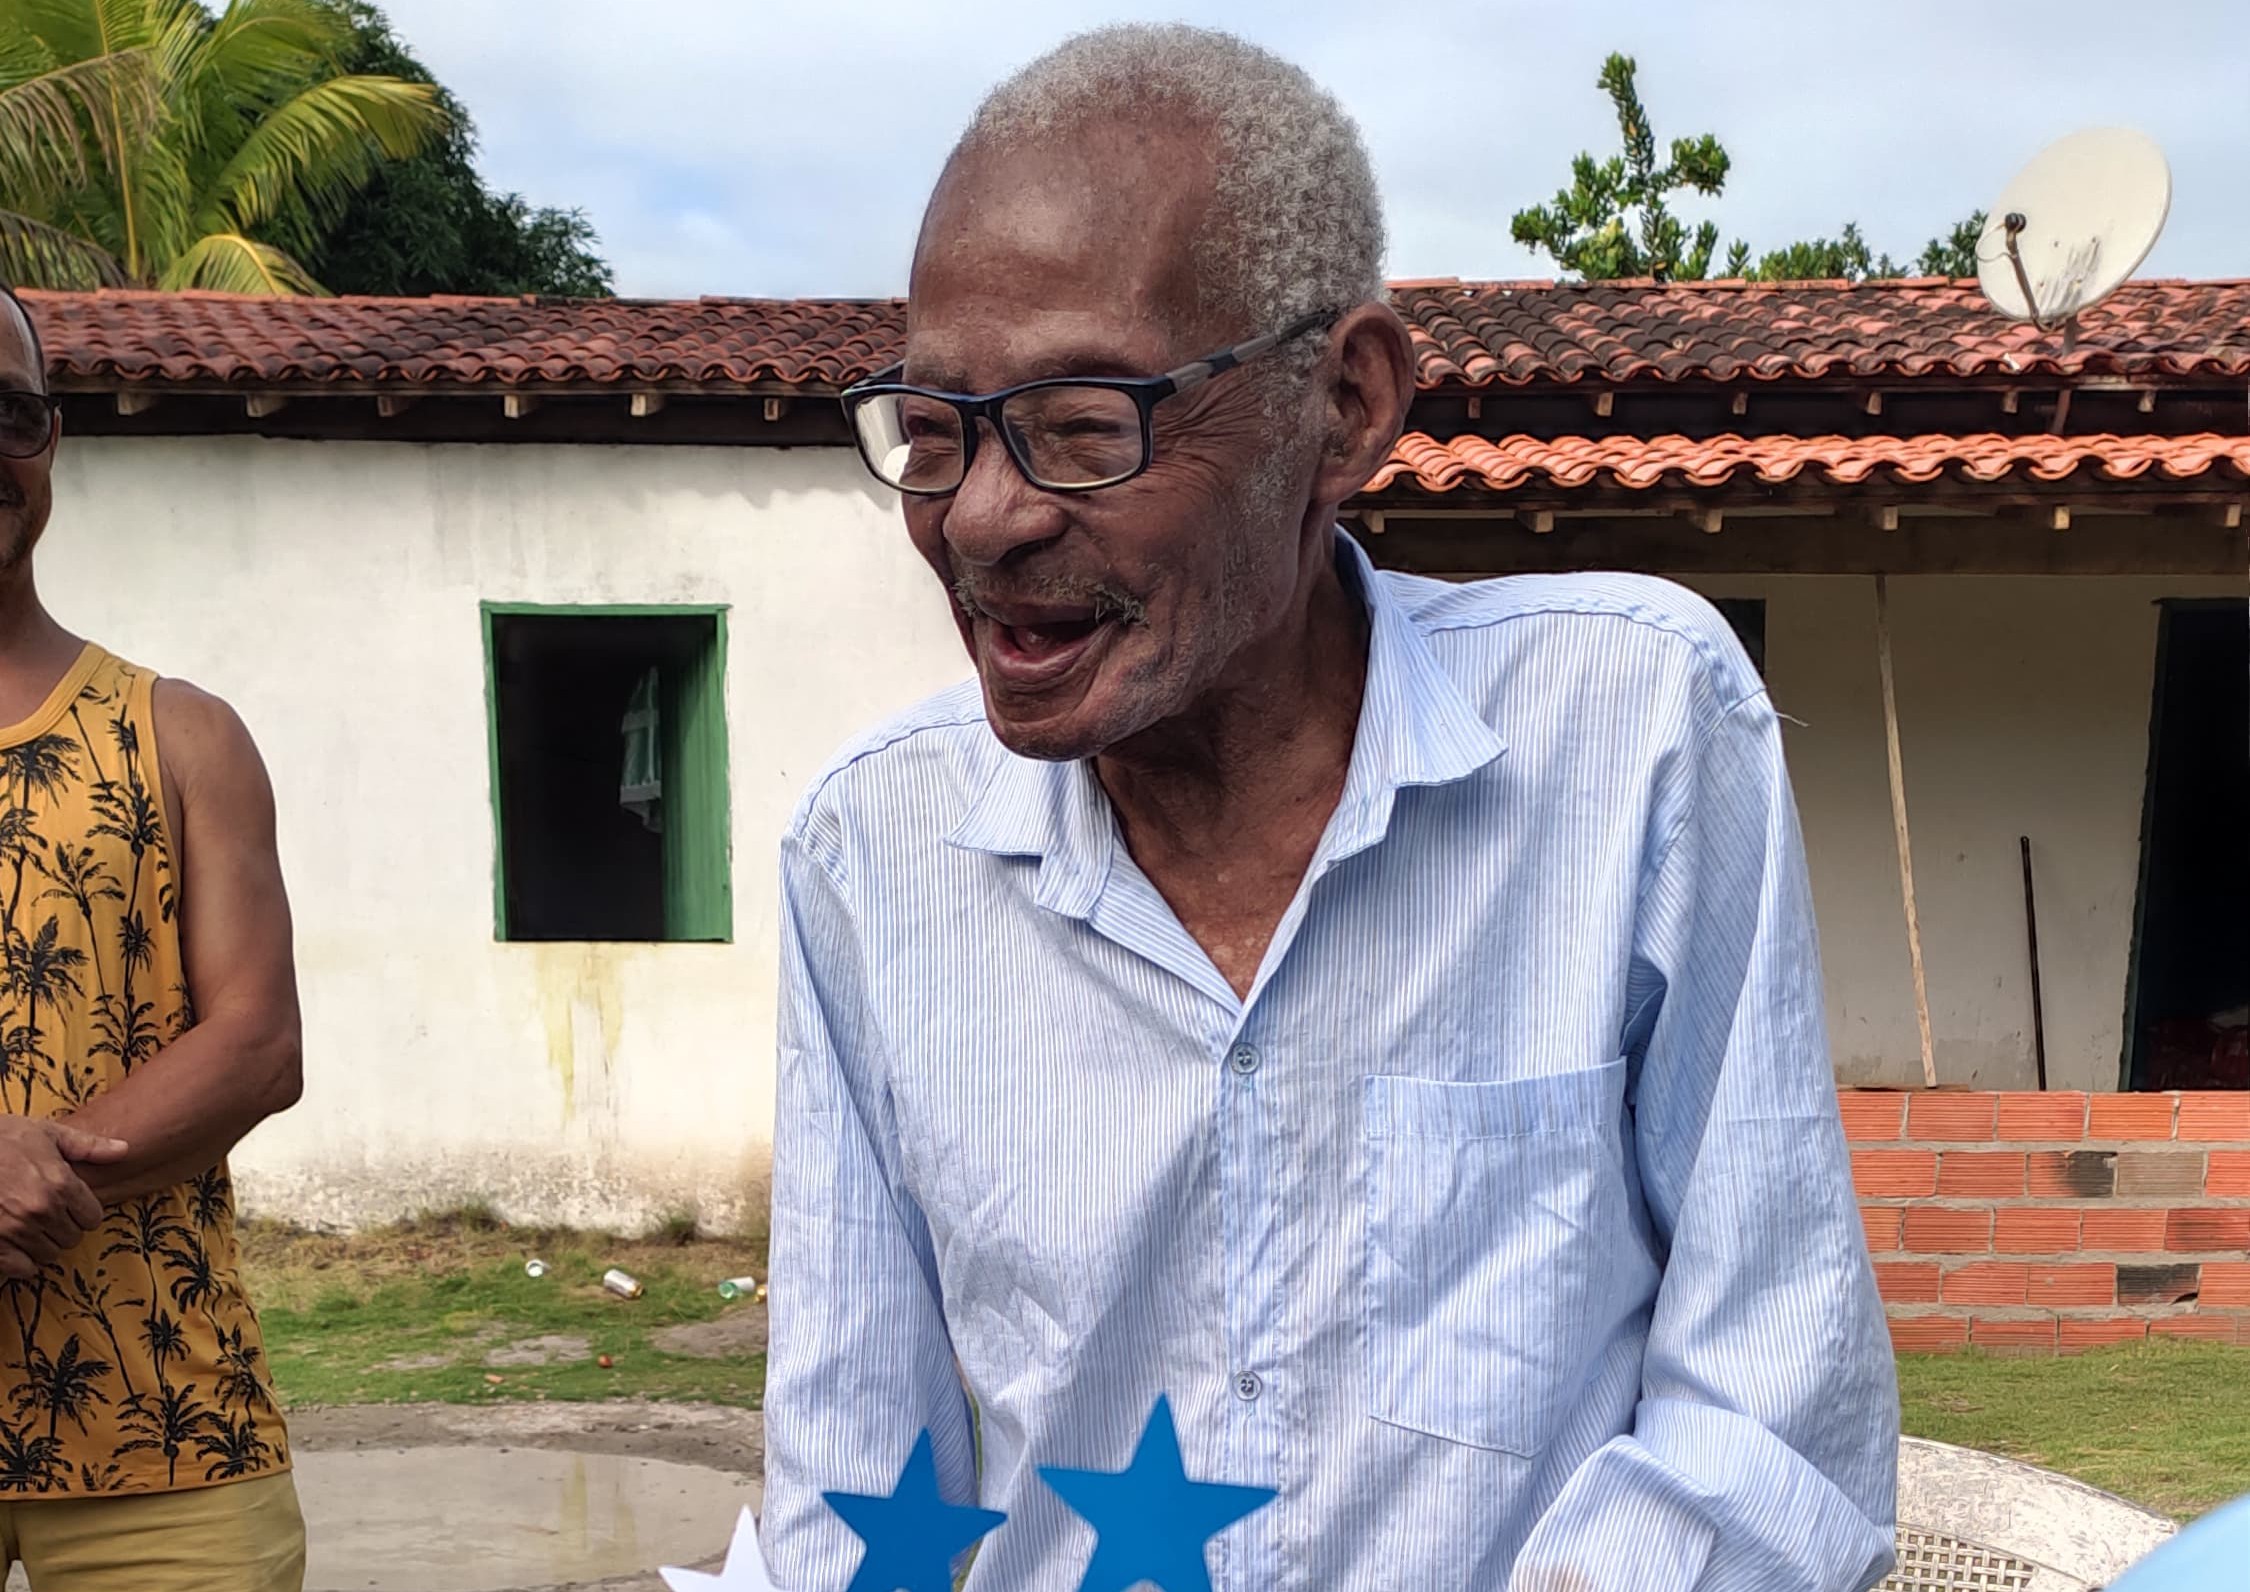 Idoso comemora aniversário de 116 anos na Bahia: 'Ainda cai na farra'